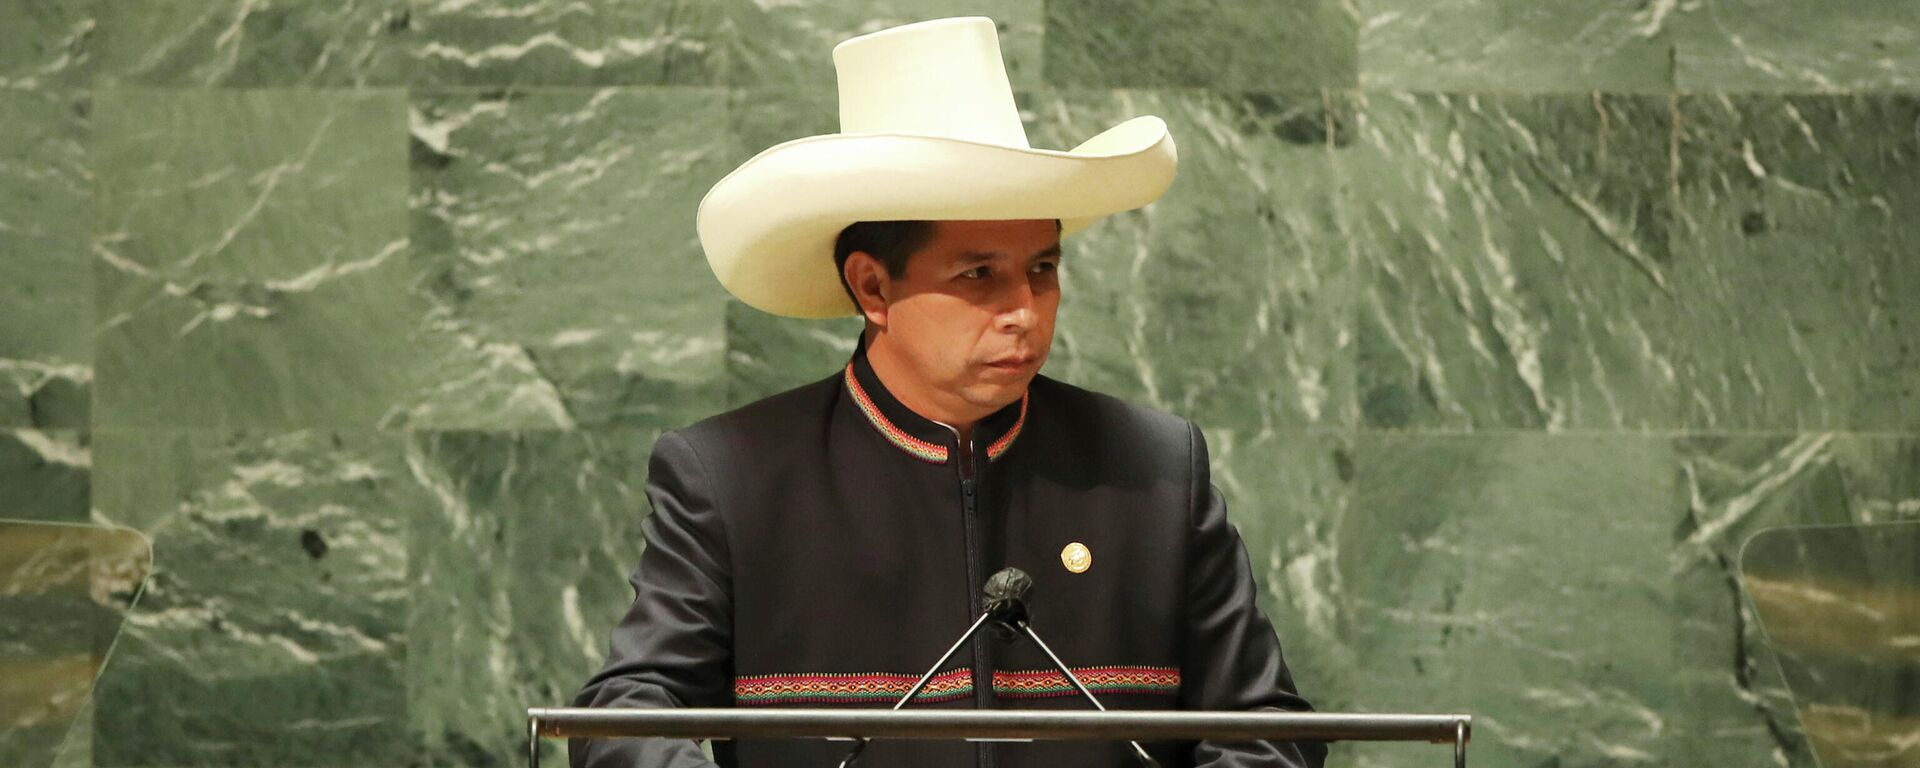 El presidente de Perú, Pedro Castillo, durante la Asamblea General de Naciones Unidas en 2021 - Sputnik Mundo, 1920, 27.05.2022